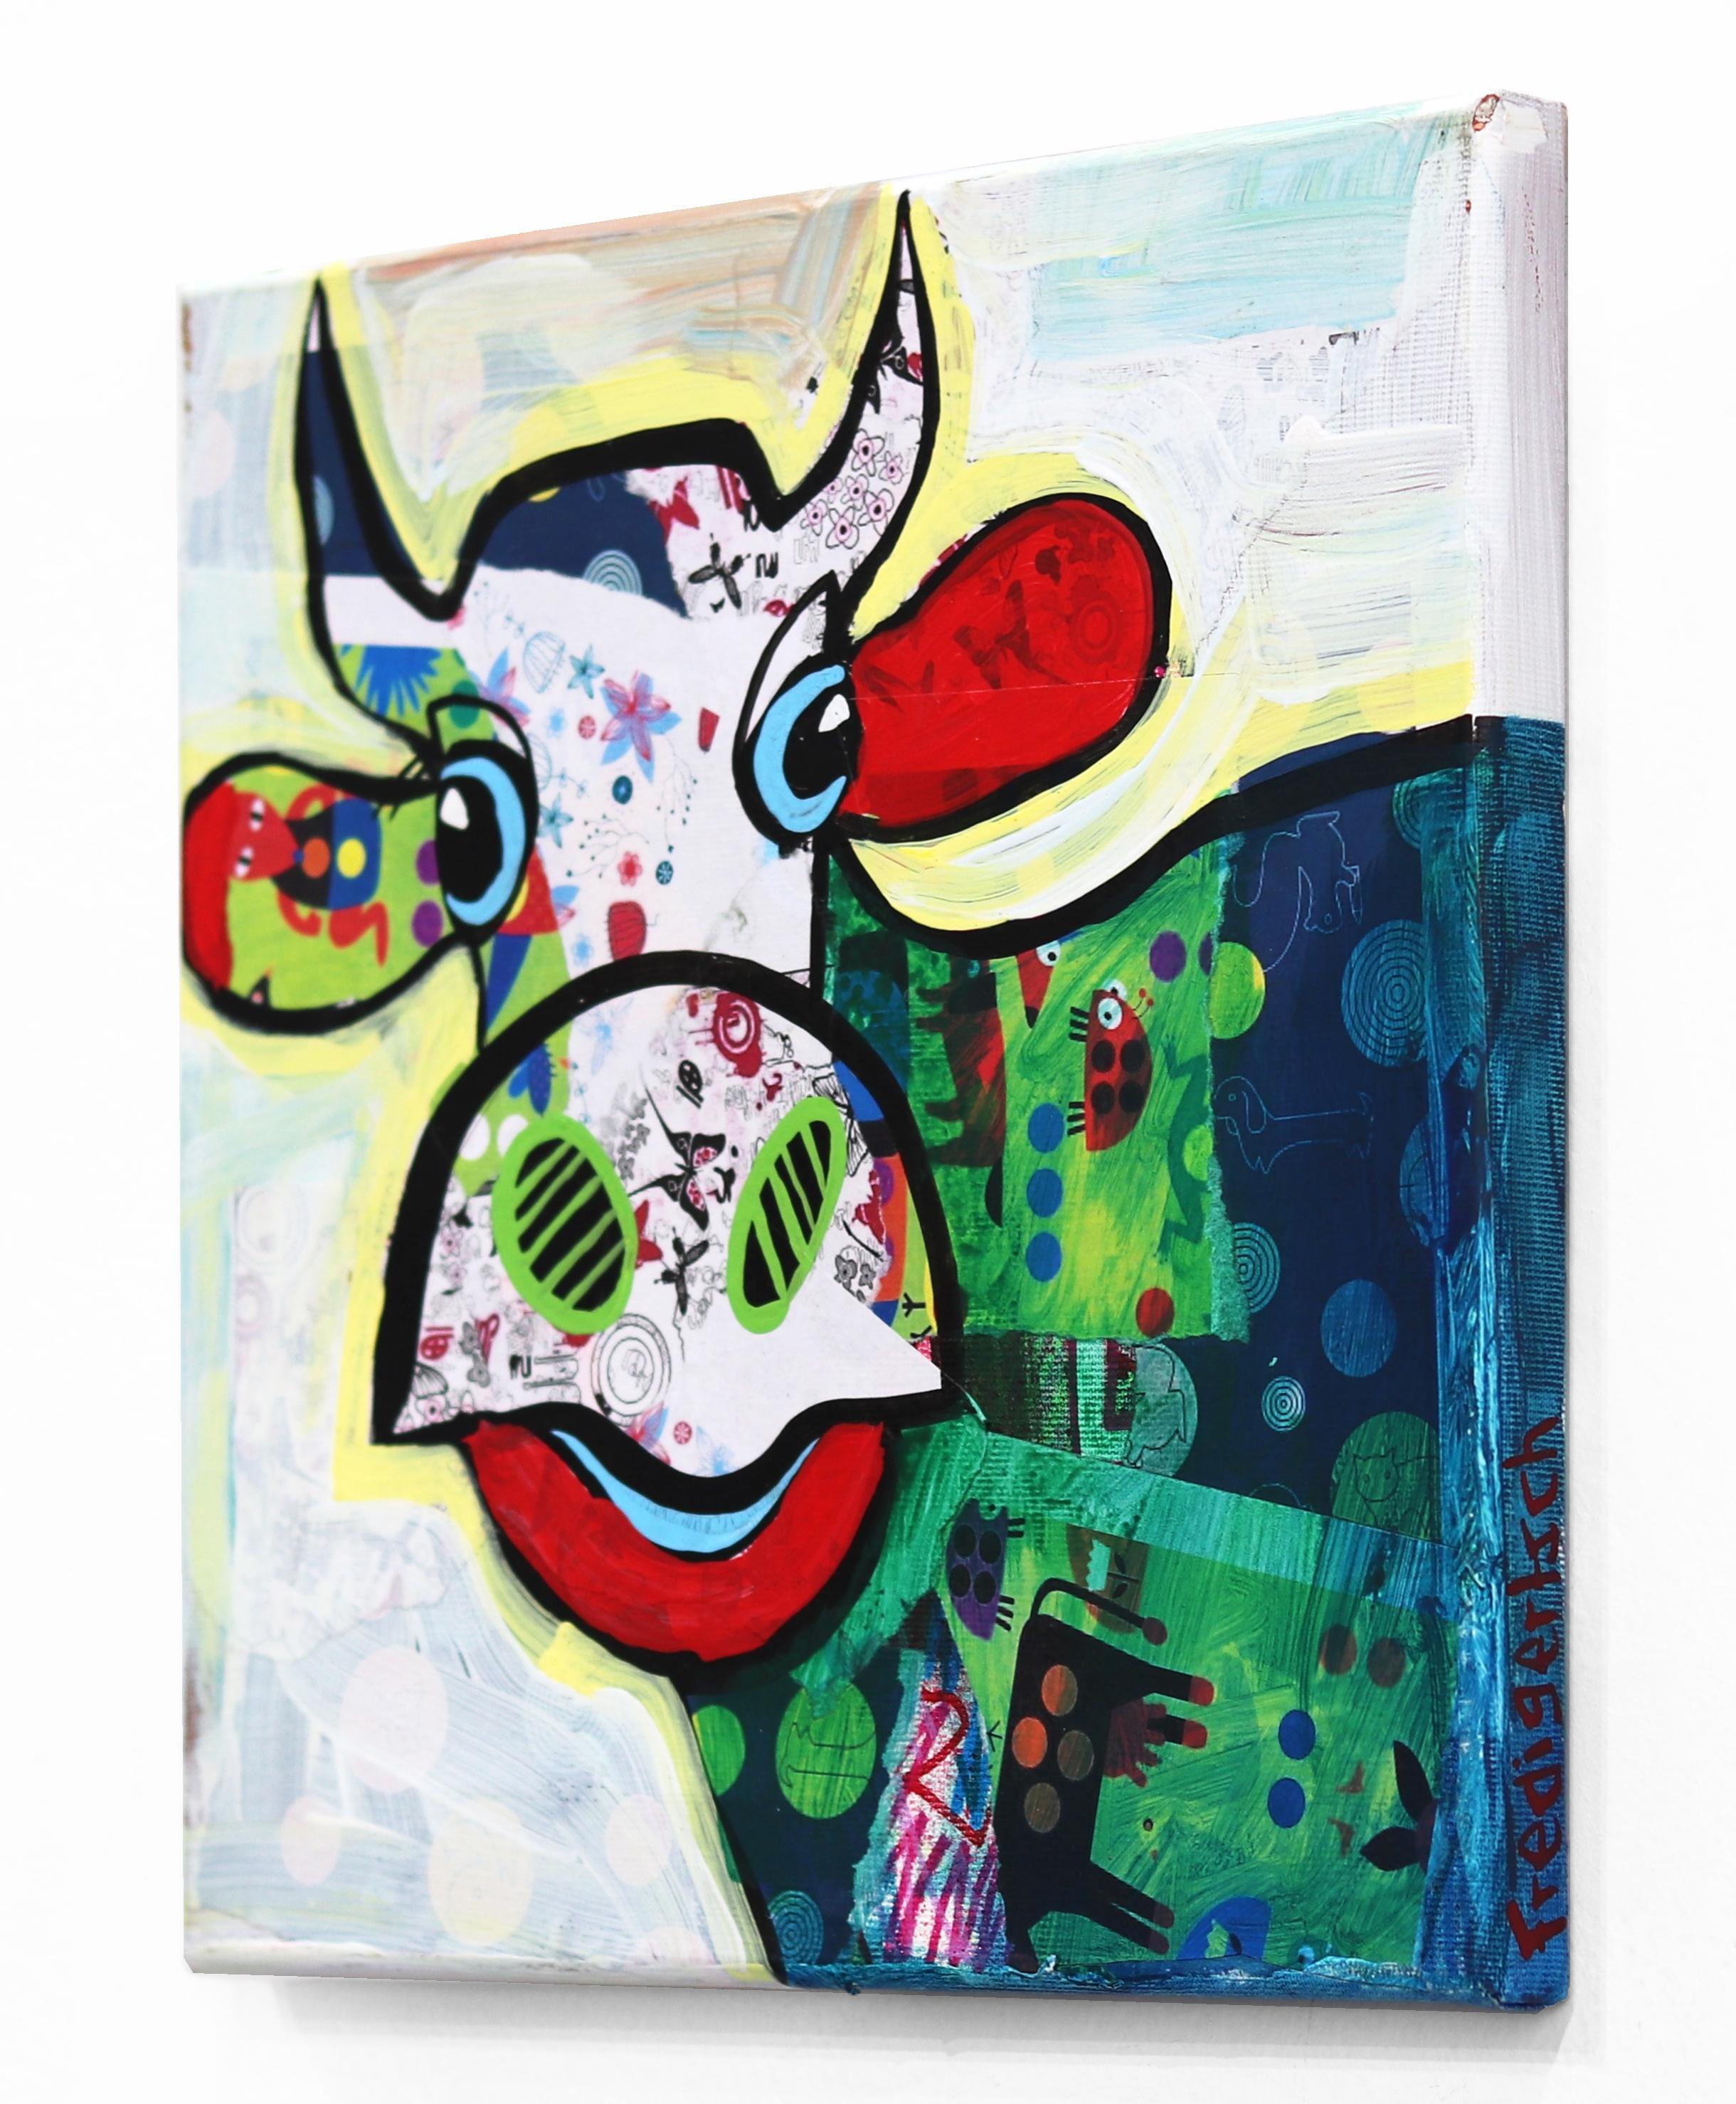 Der Schweizer Künstler Fredi Gertsch schafft lebendige, farbenfrohe Pop-Folk-Art-Bilder mit einem unerschöpflichen Element: der Emmentaler Kuh. Humor und Optimismus sind wesentliche Charakterzüge des Künstlers: 